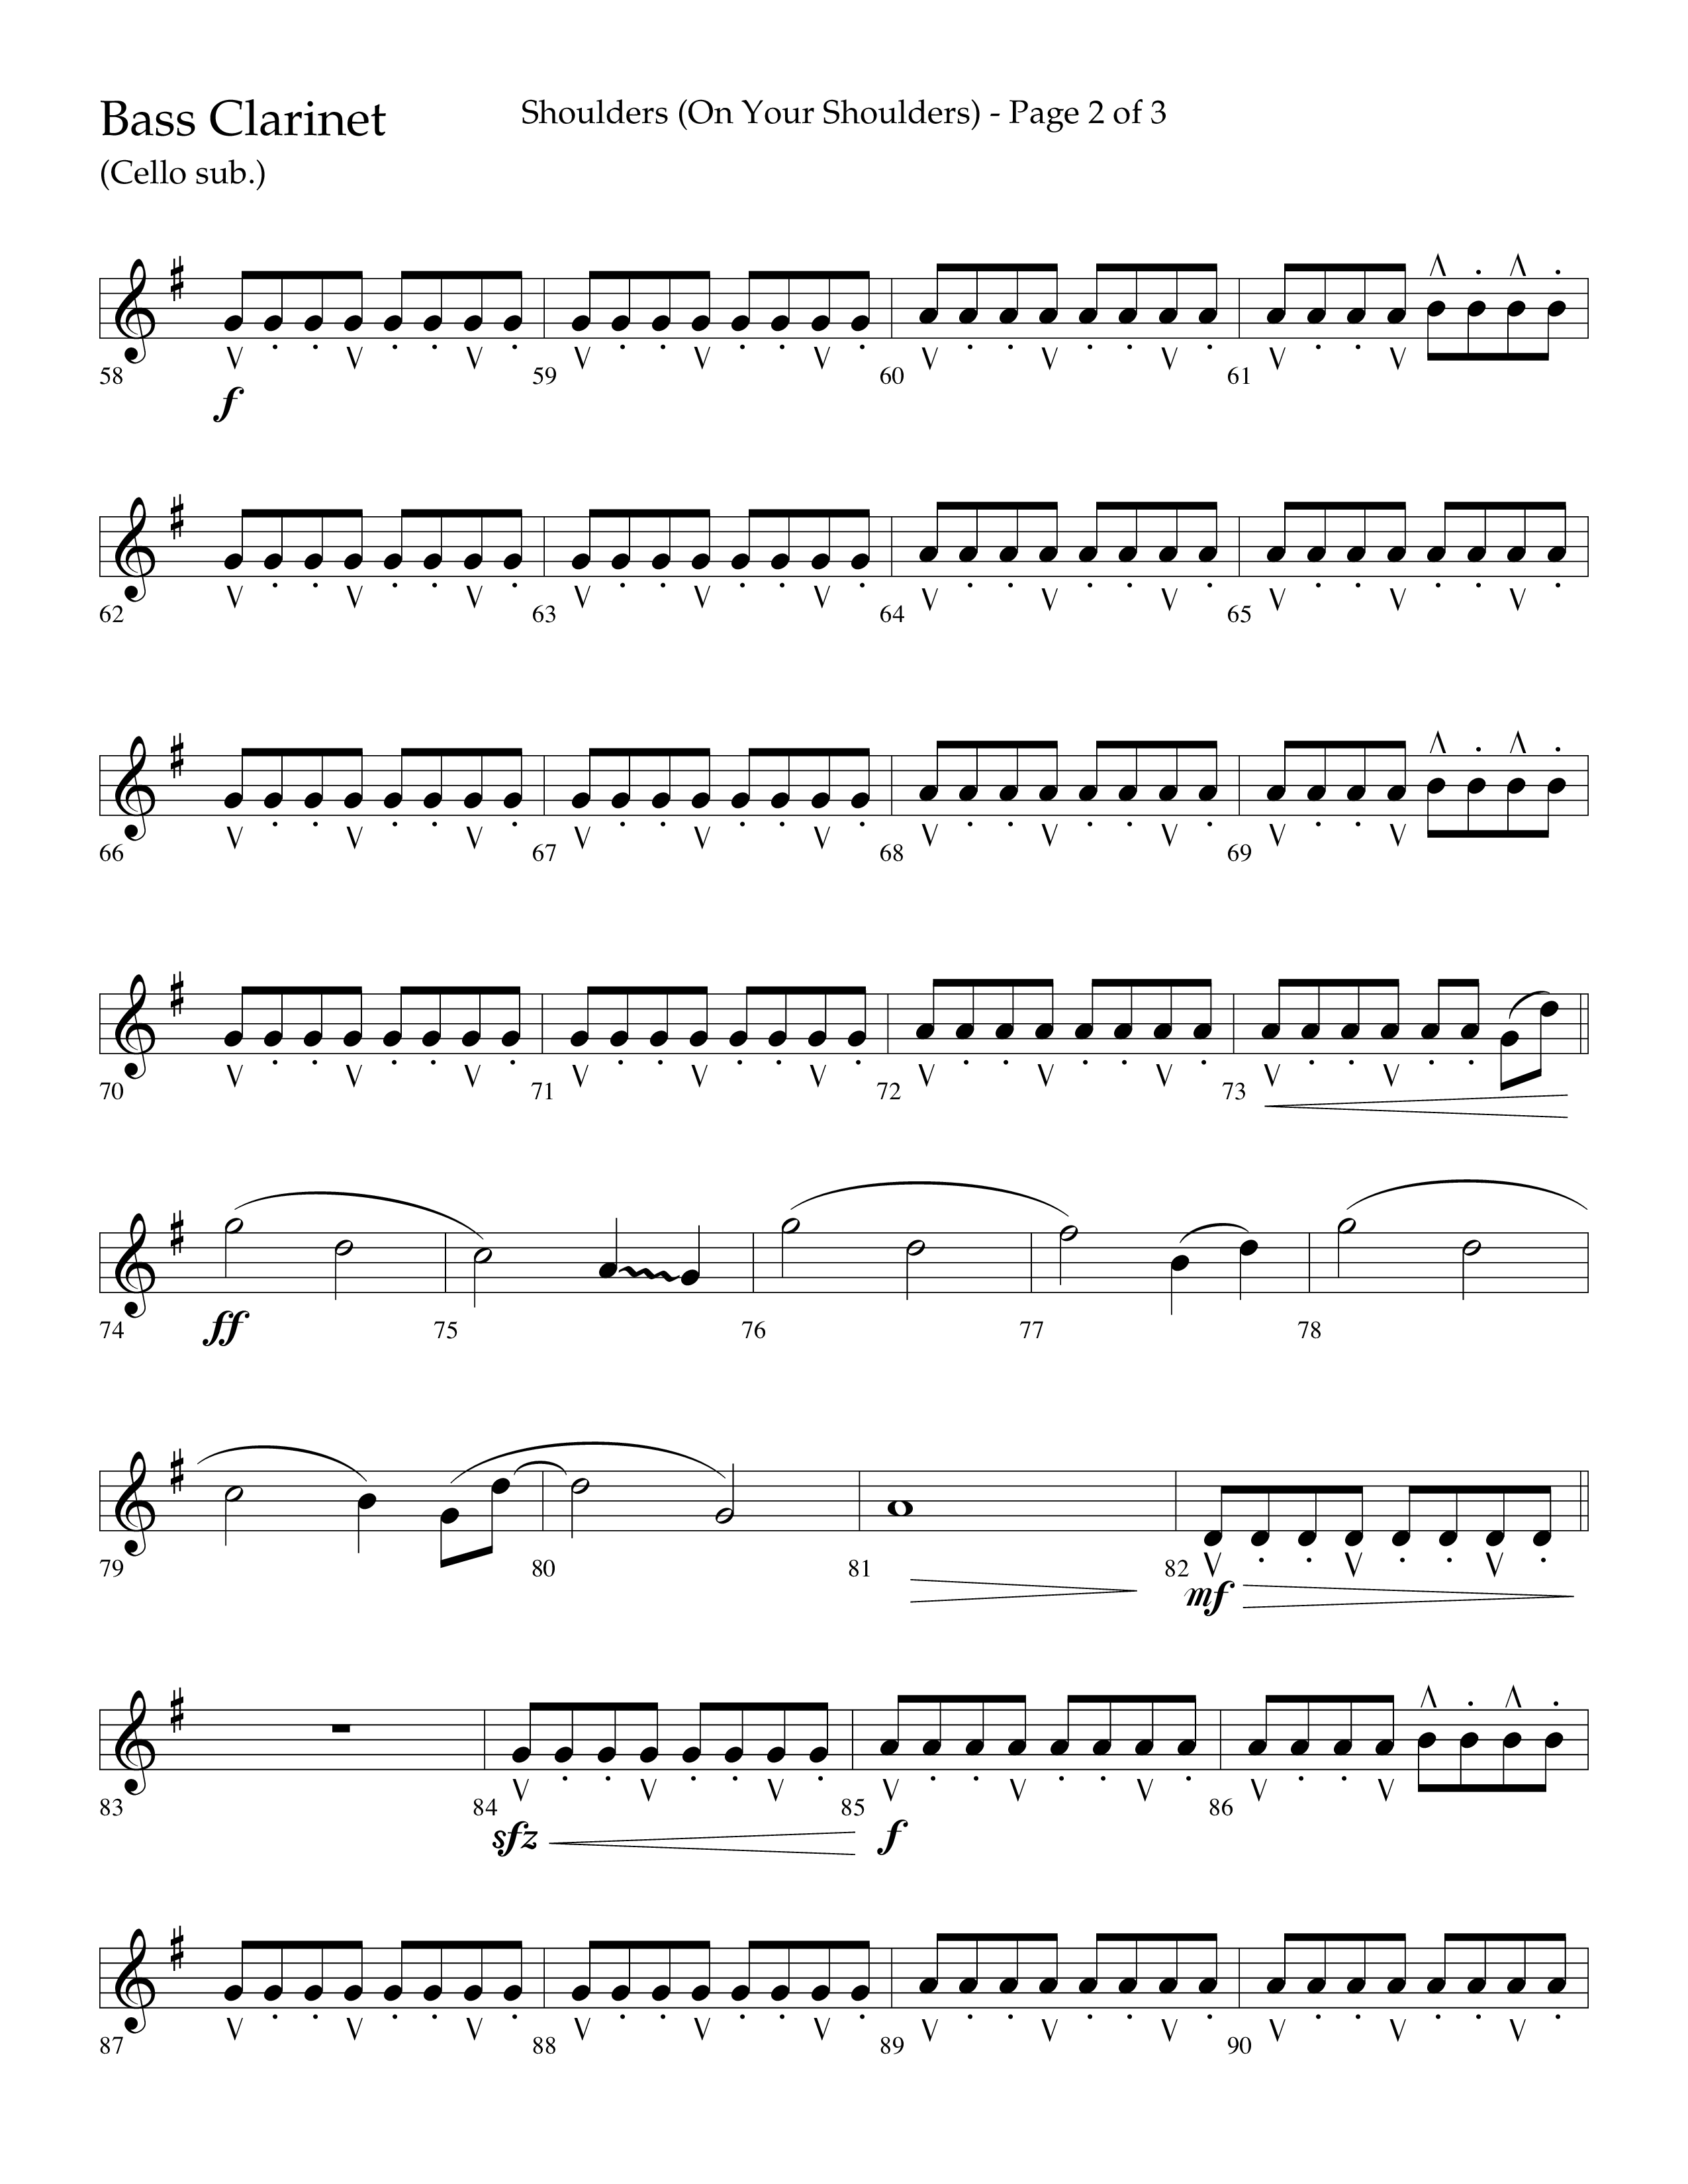 Shoulders (Choral Anthem SATB) Bass Clarinet (Lifeway Choral / Arr. Cliff Duren)